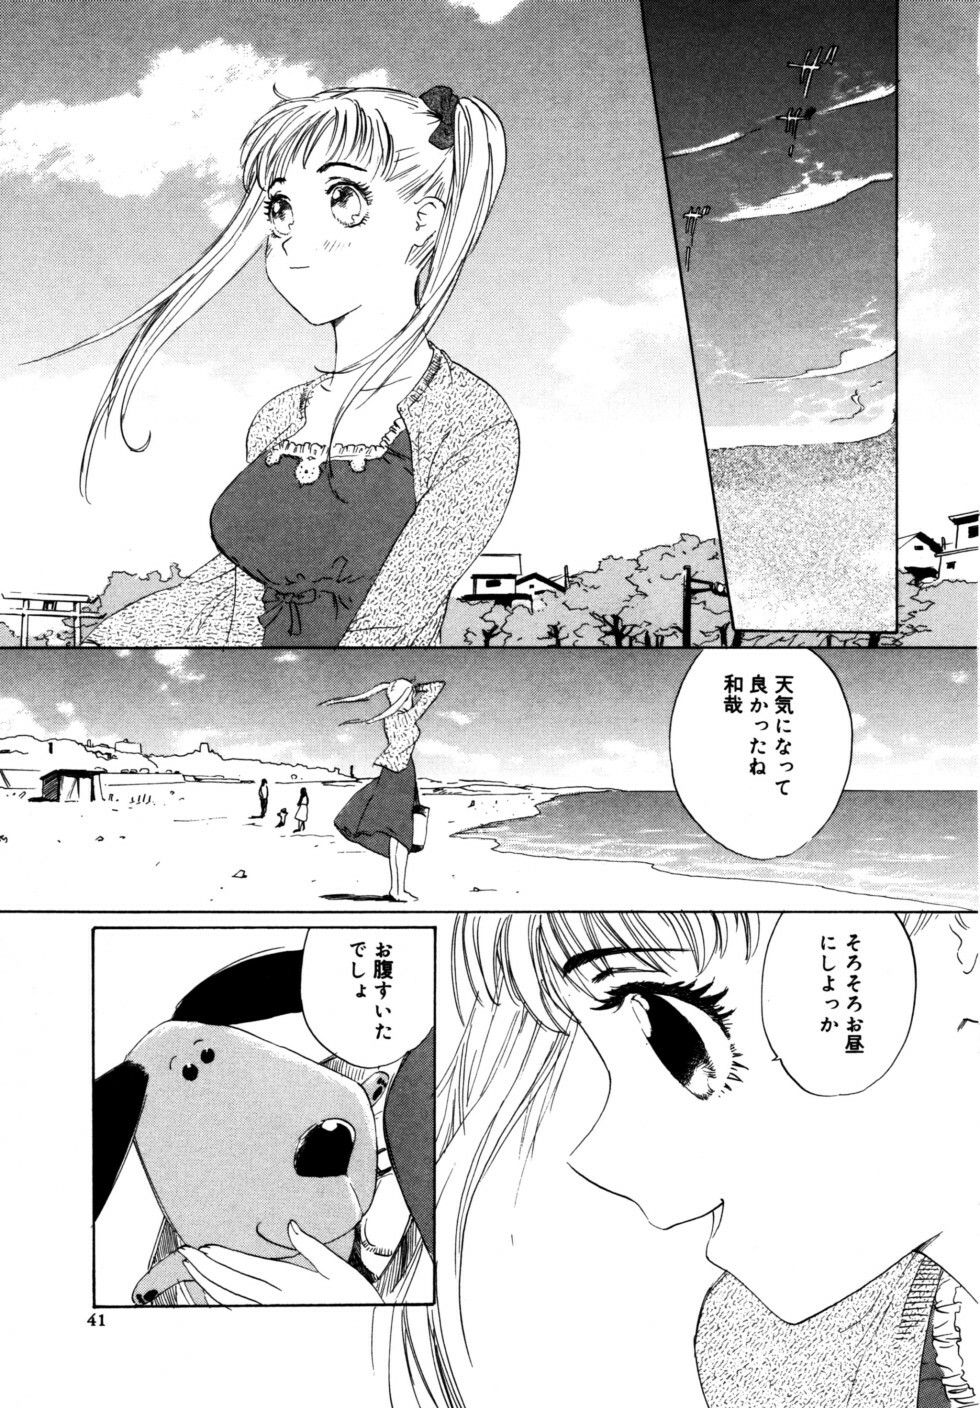 [Shirogane Anjyu] Nukumori No Kioku page 41 full